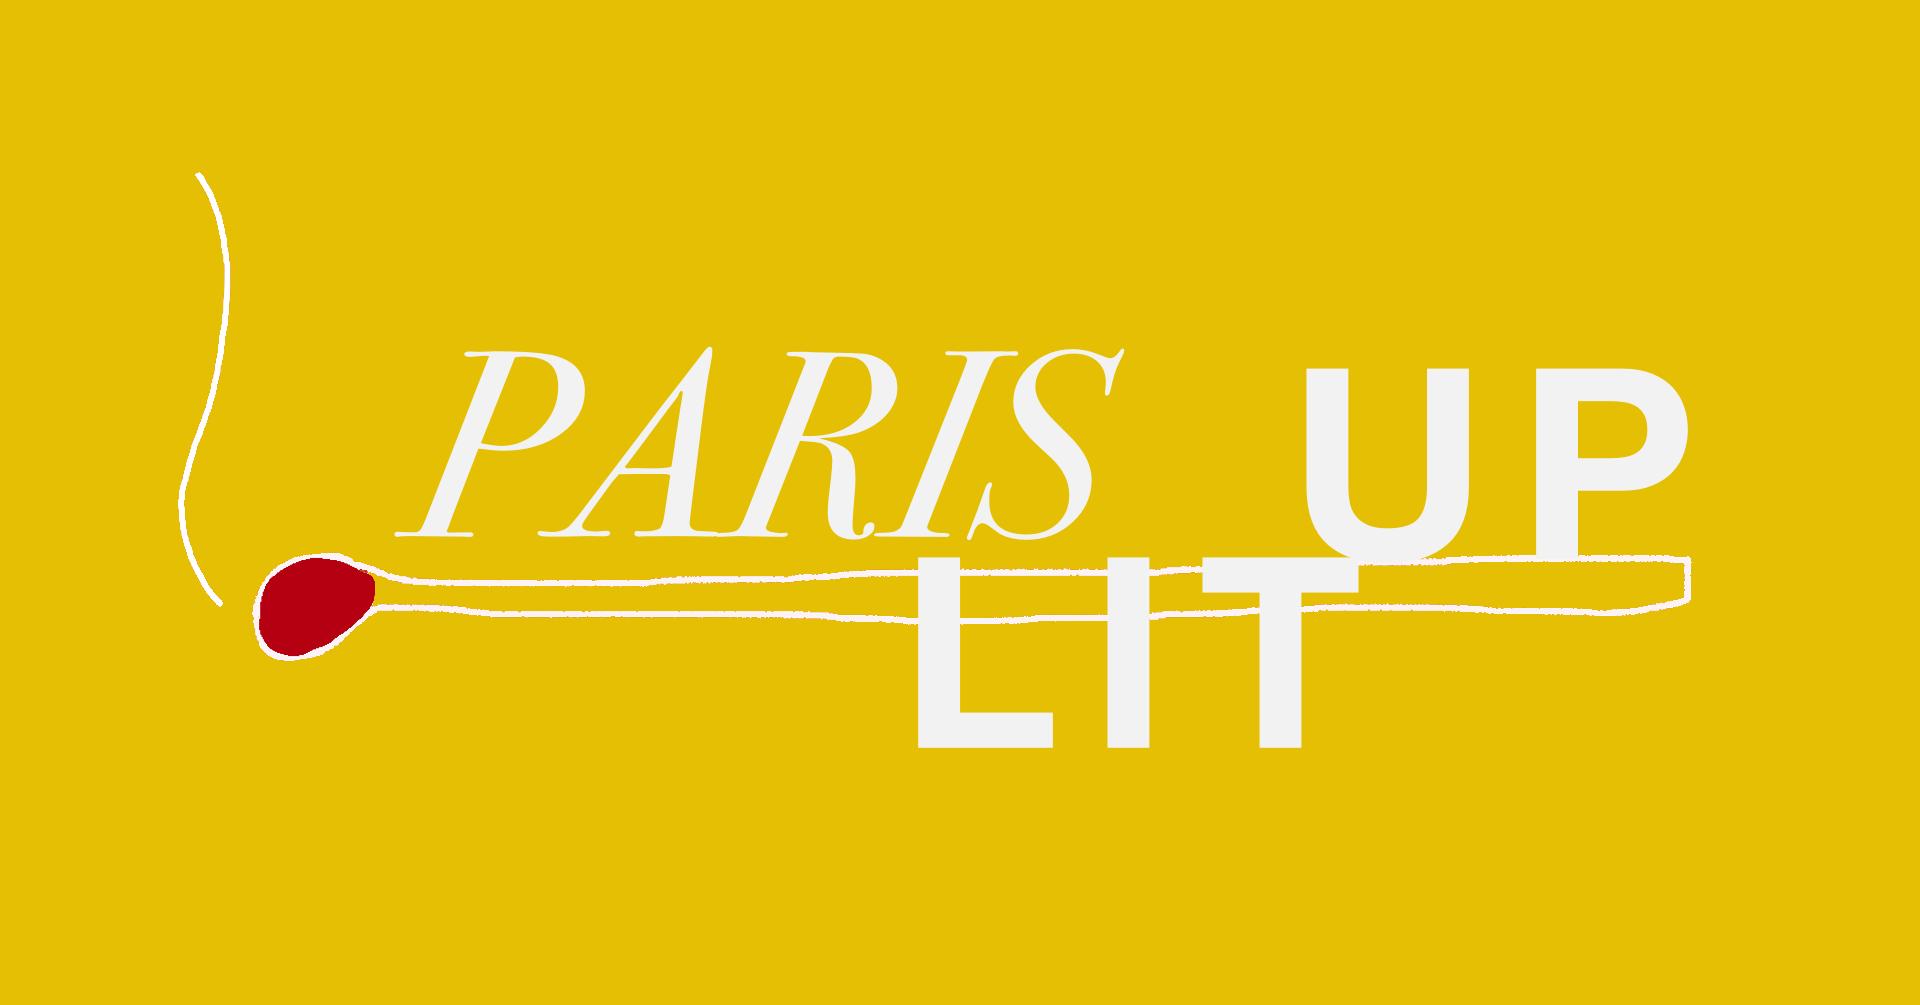 Paris Lit Up